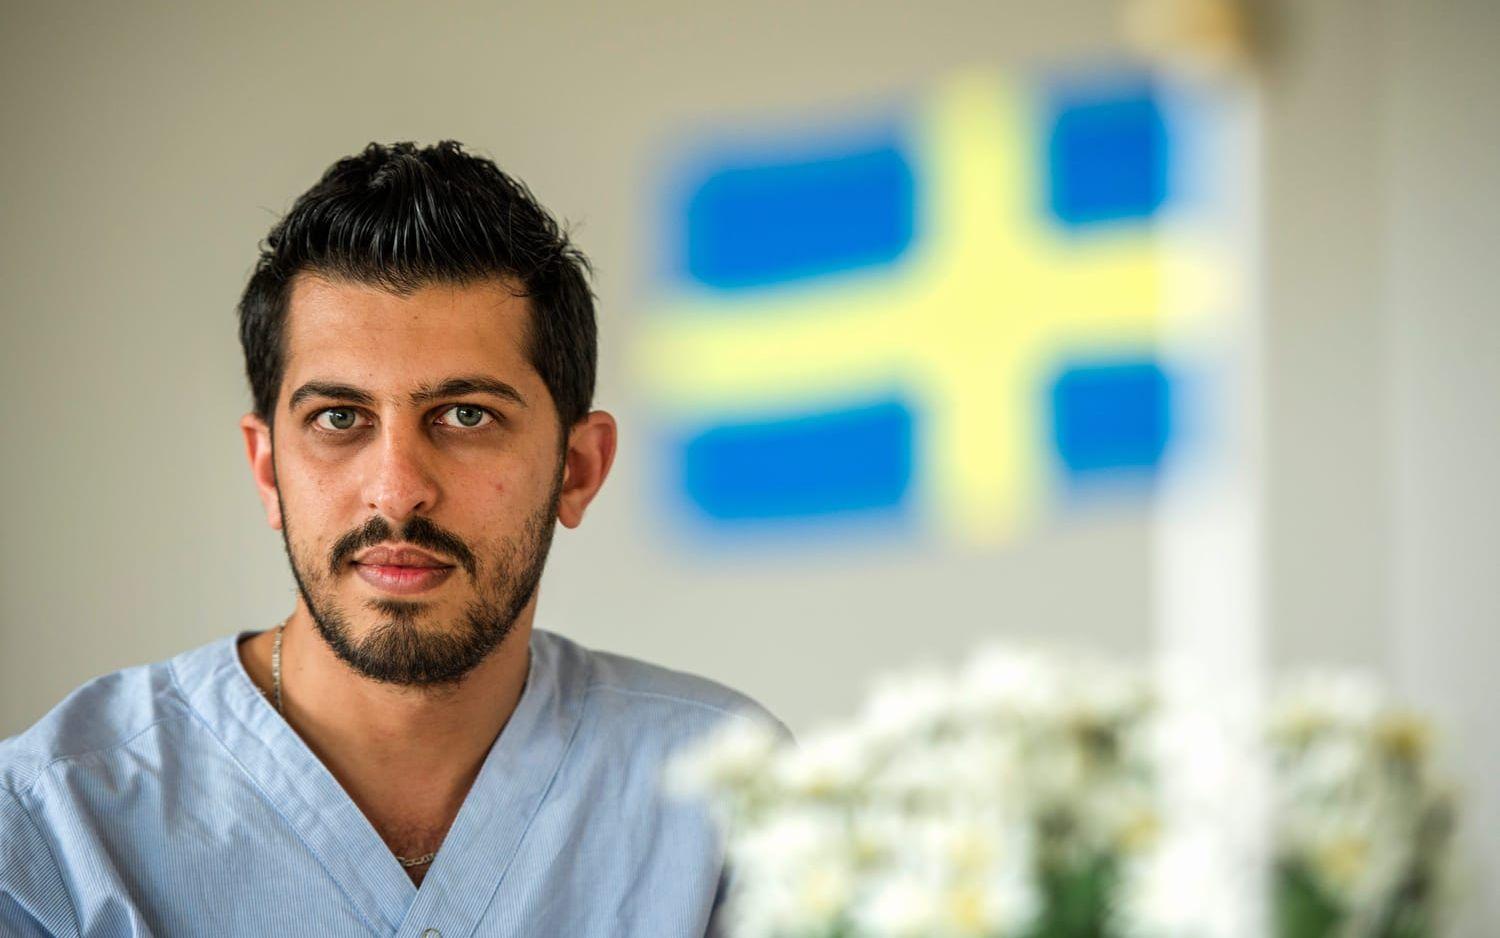 Extratjänst. Mohamad kom till Sverige från Syrien för två år sedan tillsammans med sin familj. Han börjar sin extratjänst i början av augusti. Bild: Johan Persson